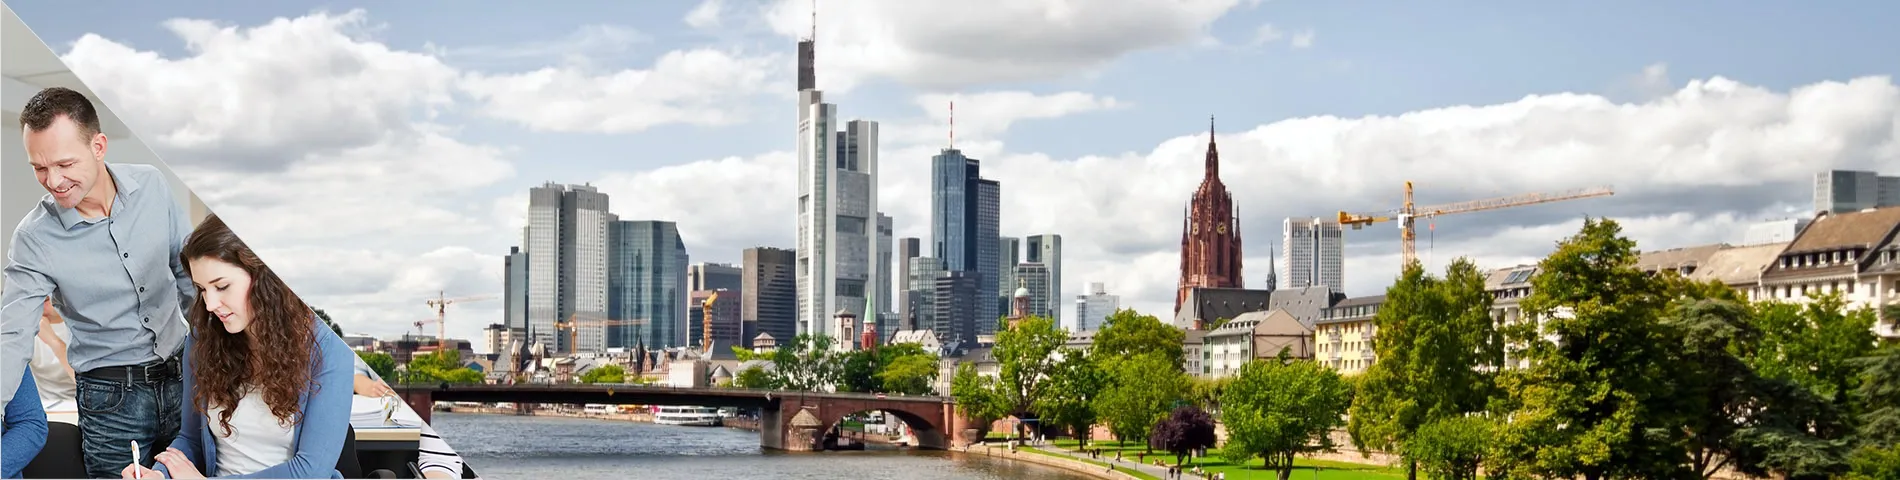 Frankfurt - Combinado: Clases en Grupo + Particulares